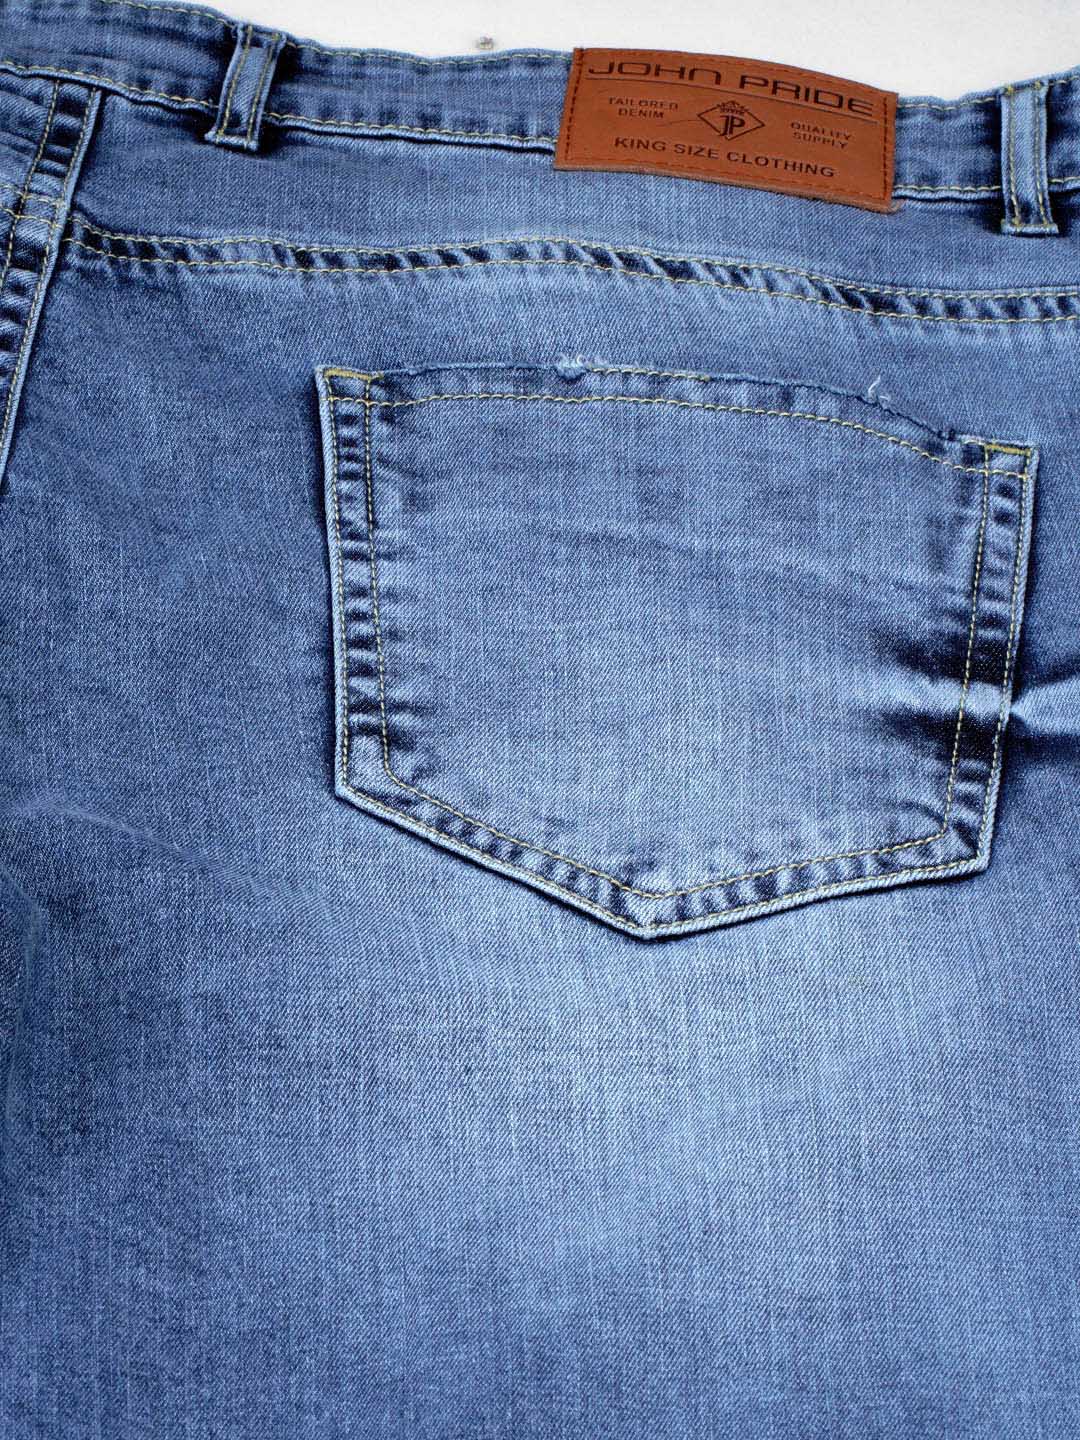 bottomwear/jeans/JPJ12127/jpj12127-5.jpg